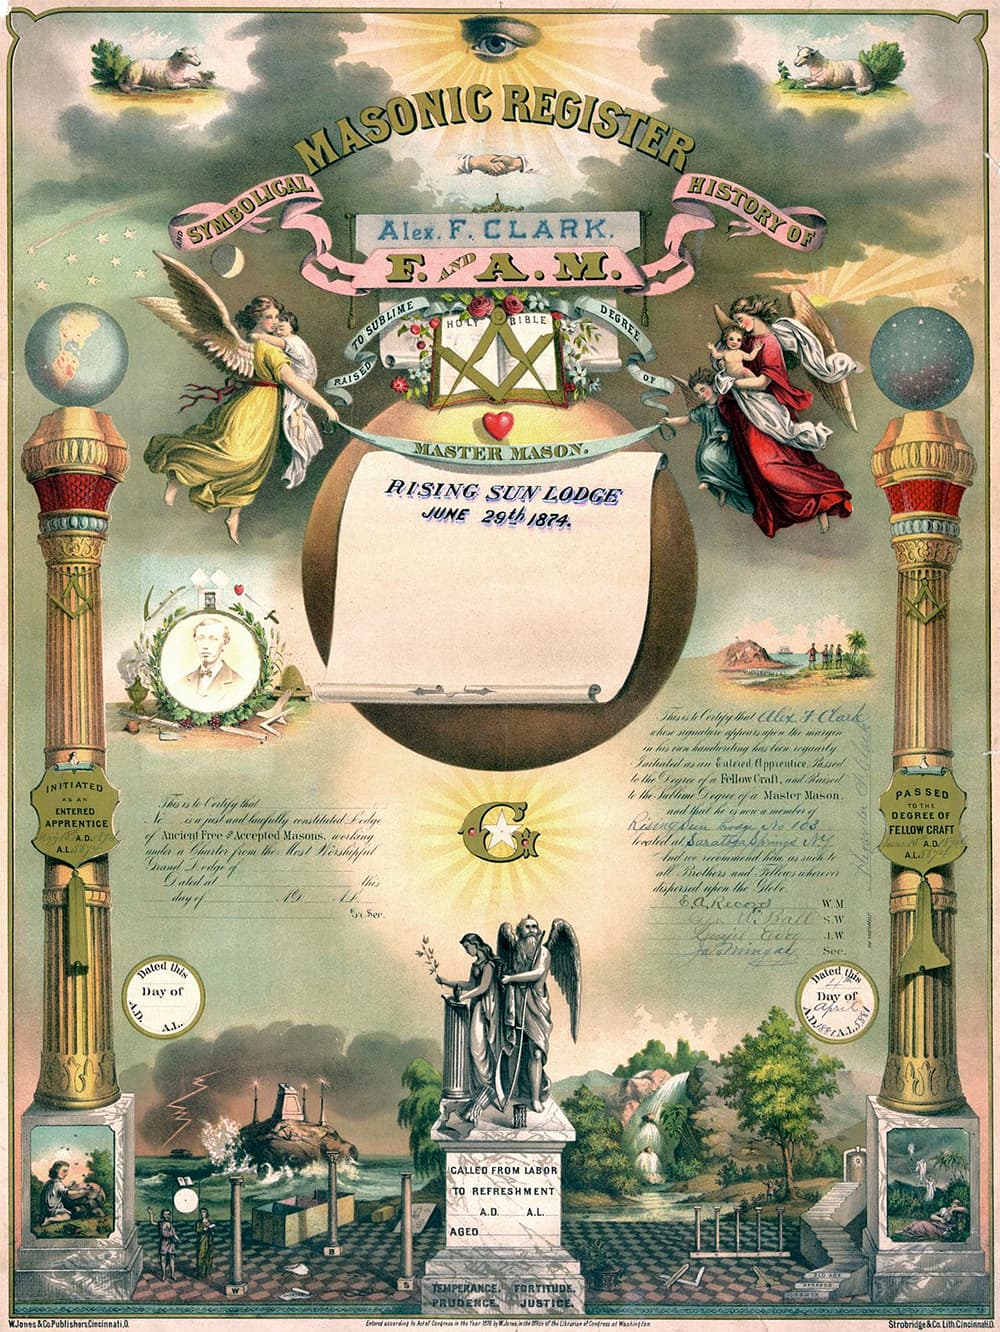 Certificado de pertenencia a una logia masónica emitido en los Estados Unidos en 1874.